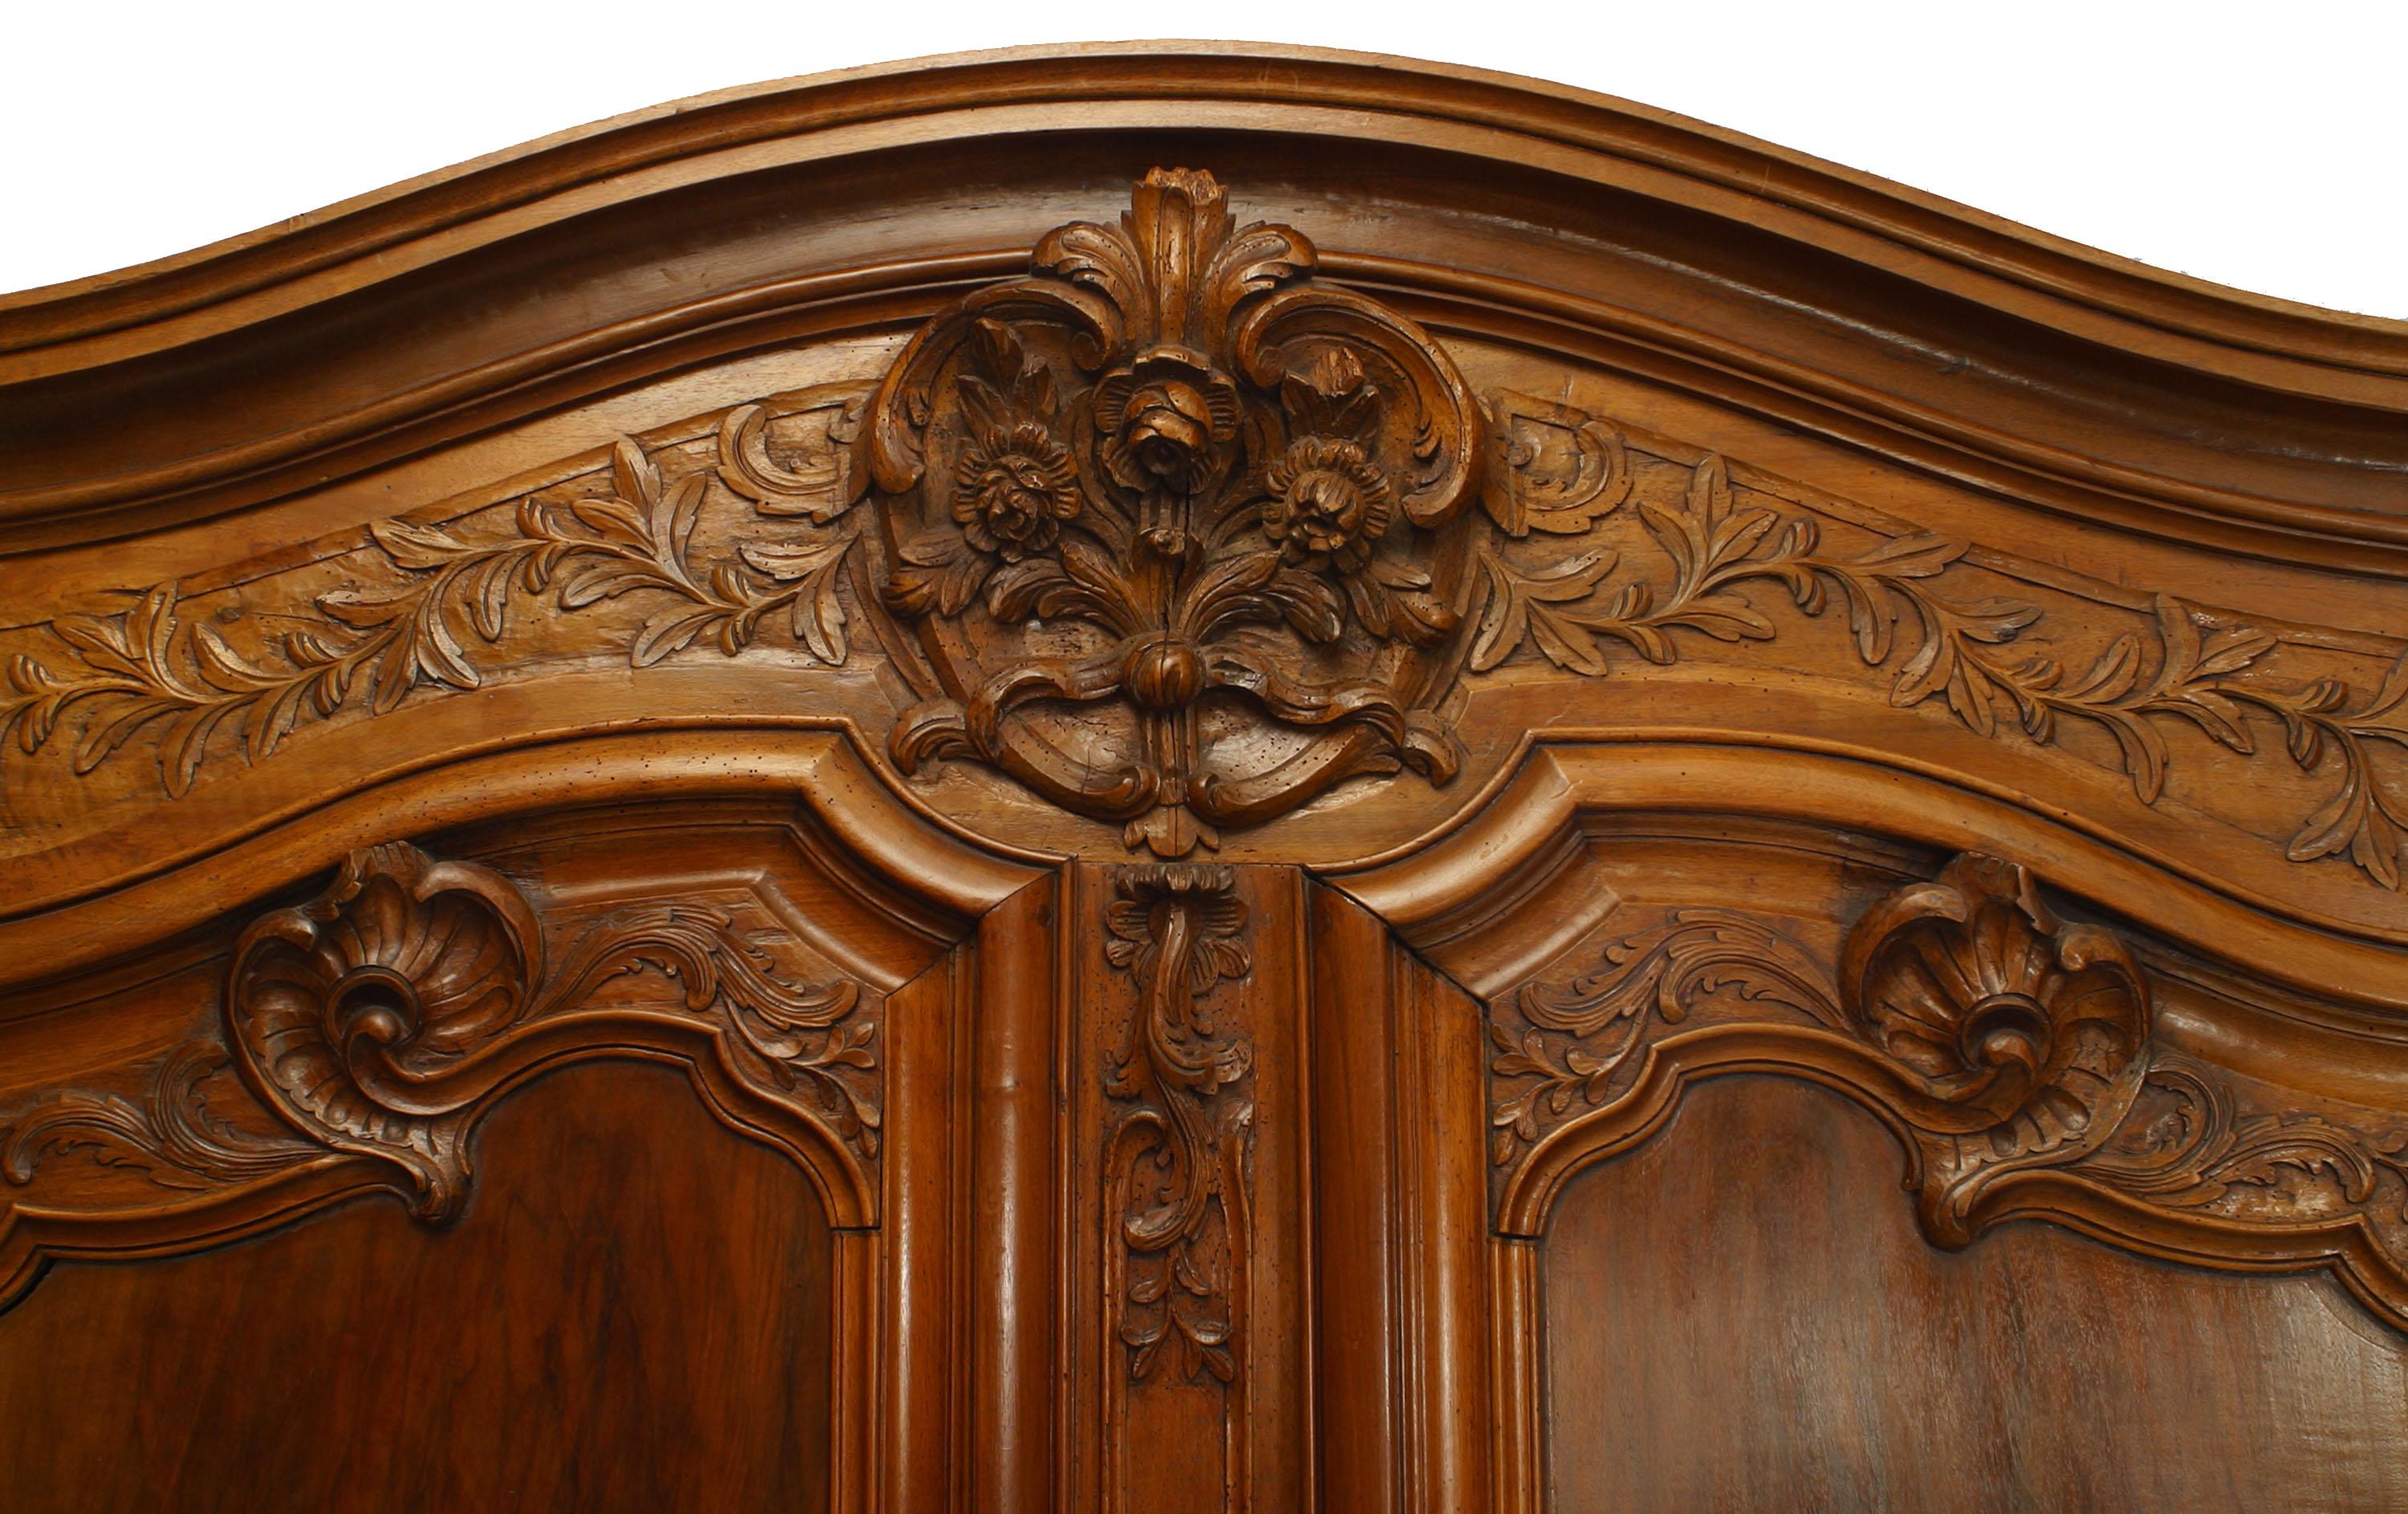 Französisch Provincial 18. Jahrhundert Nussbaum zwei Türen großen Maßstab Schrank mit foliate geschnitzten Details auf Türen und Gesims mit original Hardware auf einem flachen Sockel unterstützt.